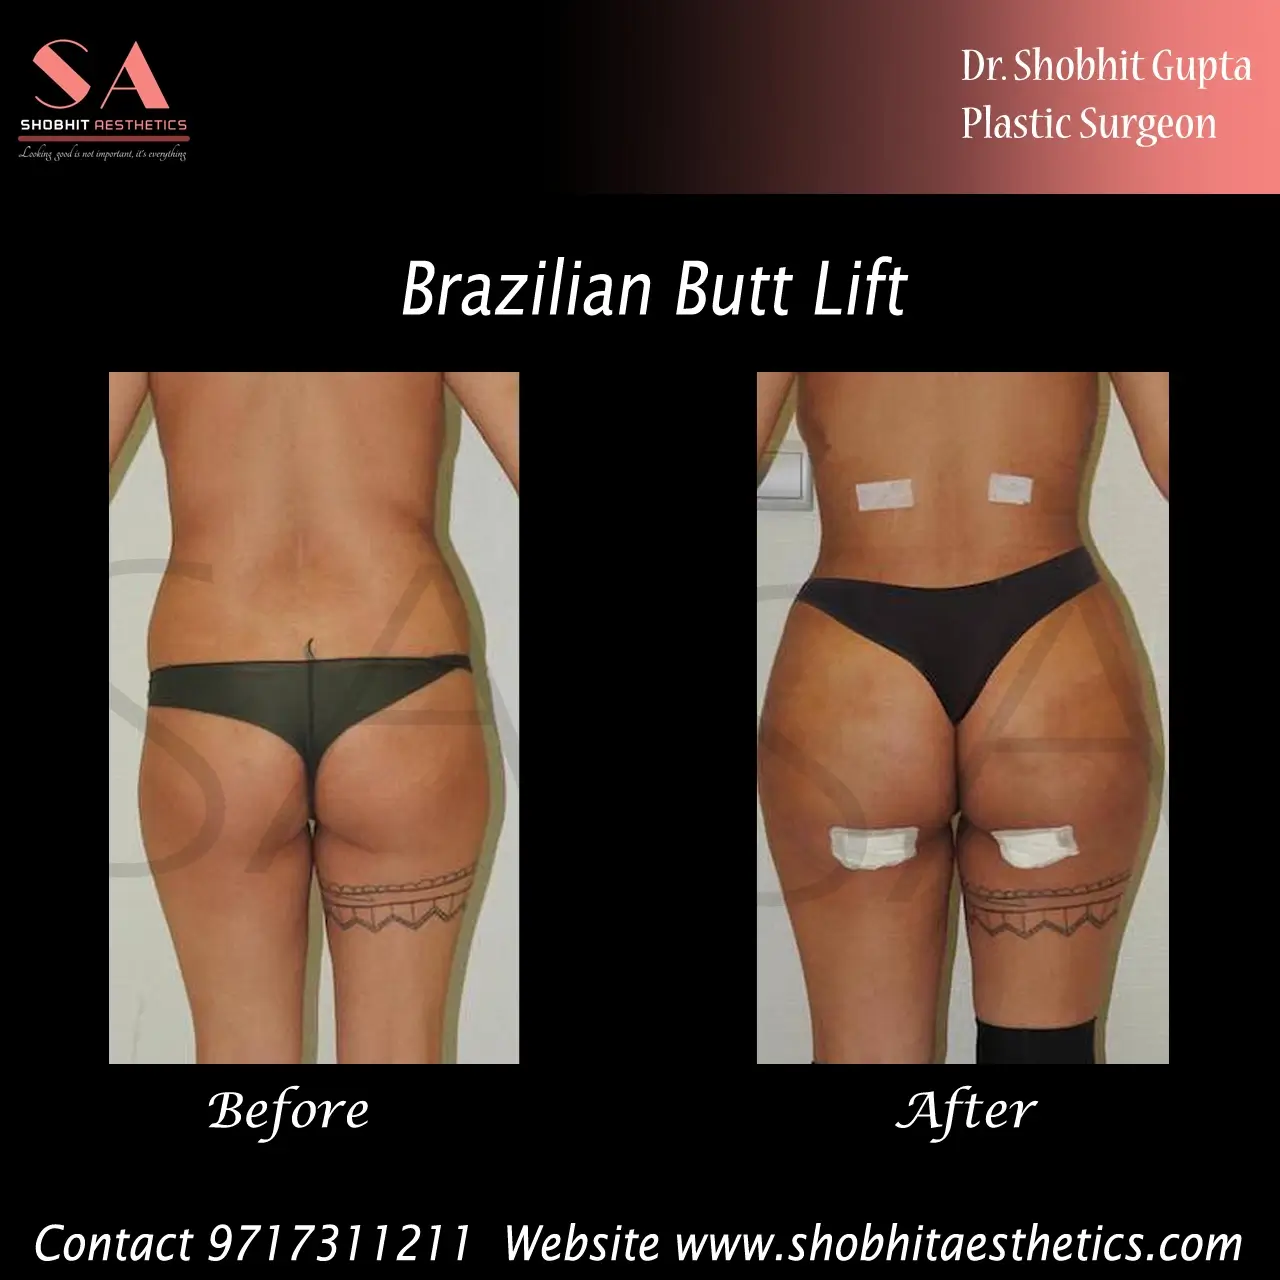 How The Brazilian Butt Lift Got Its Name